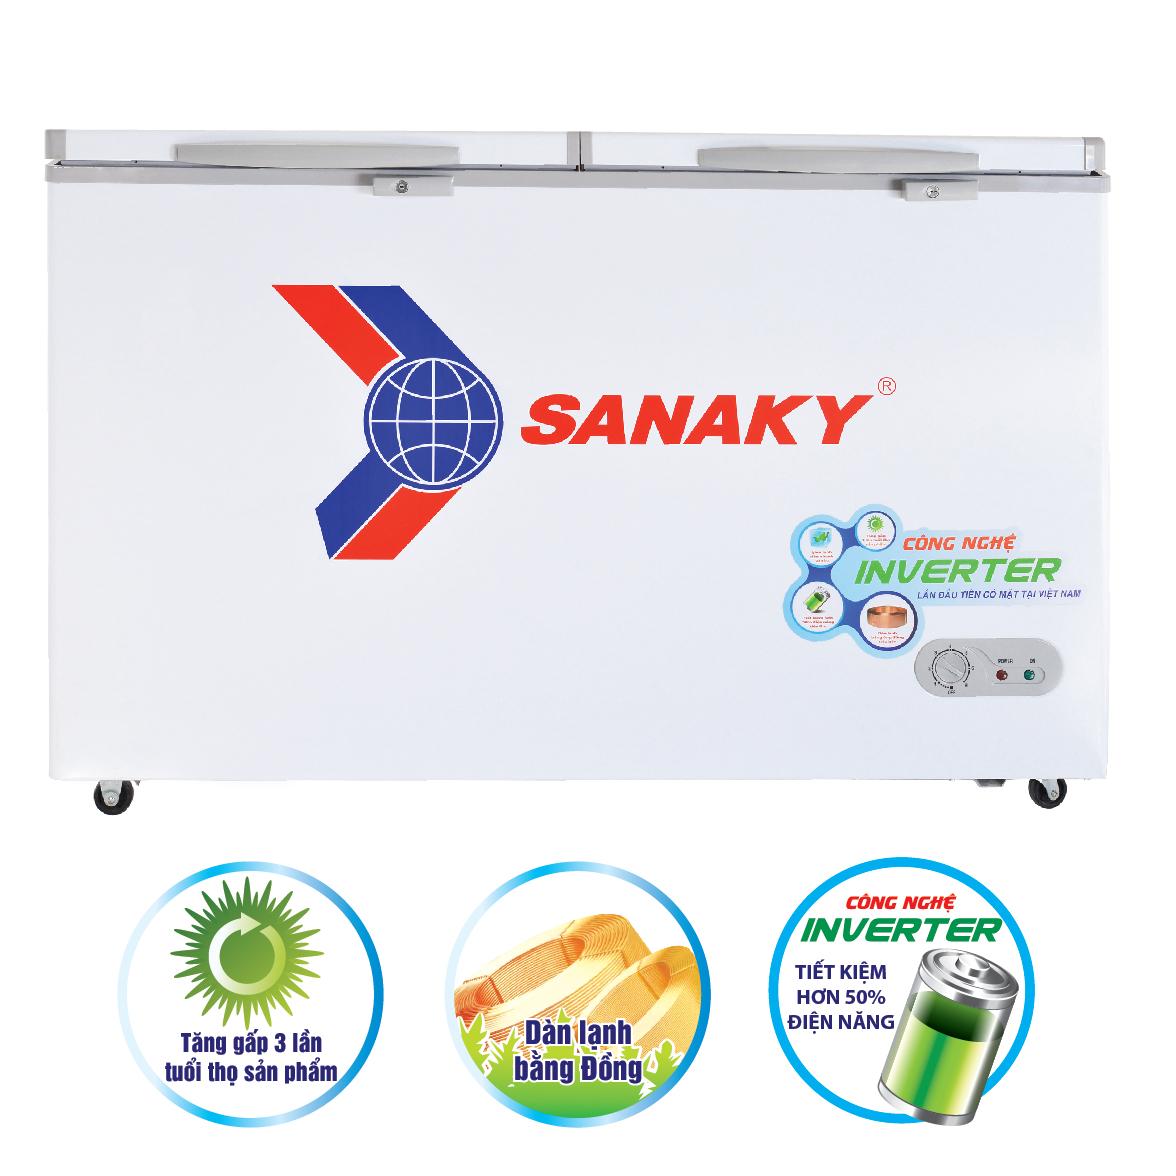 Tủ Đông Sanaky Inverter 761 Lít VH-8699HY3 giá rẻ, giao ngay